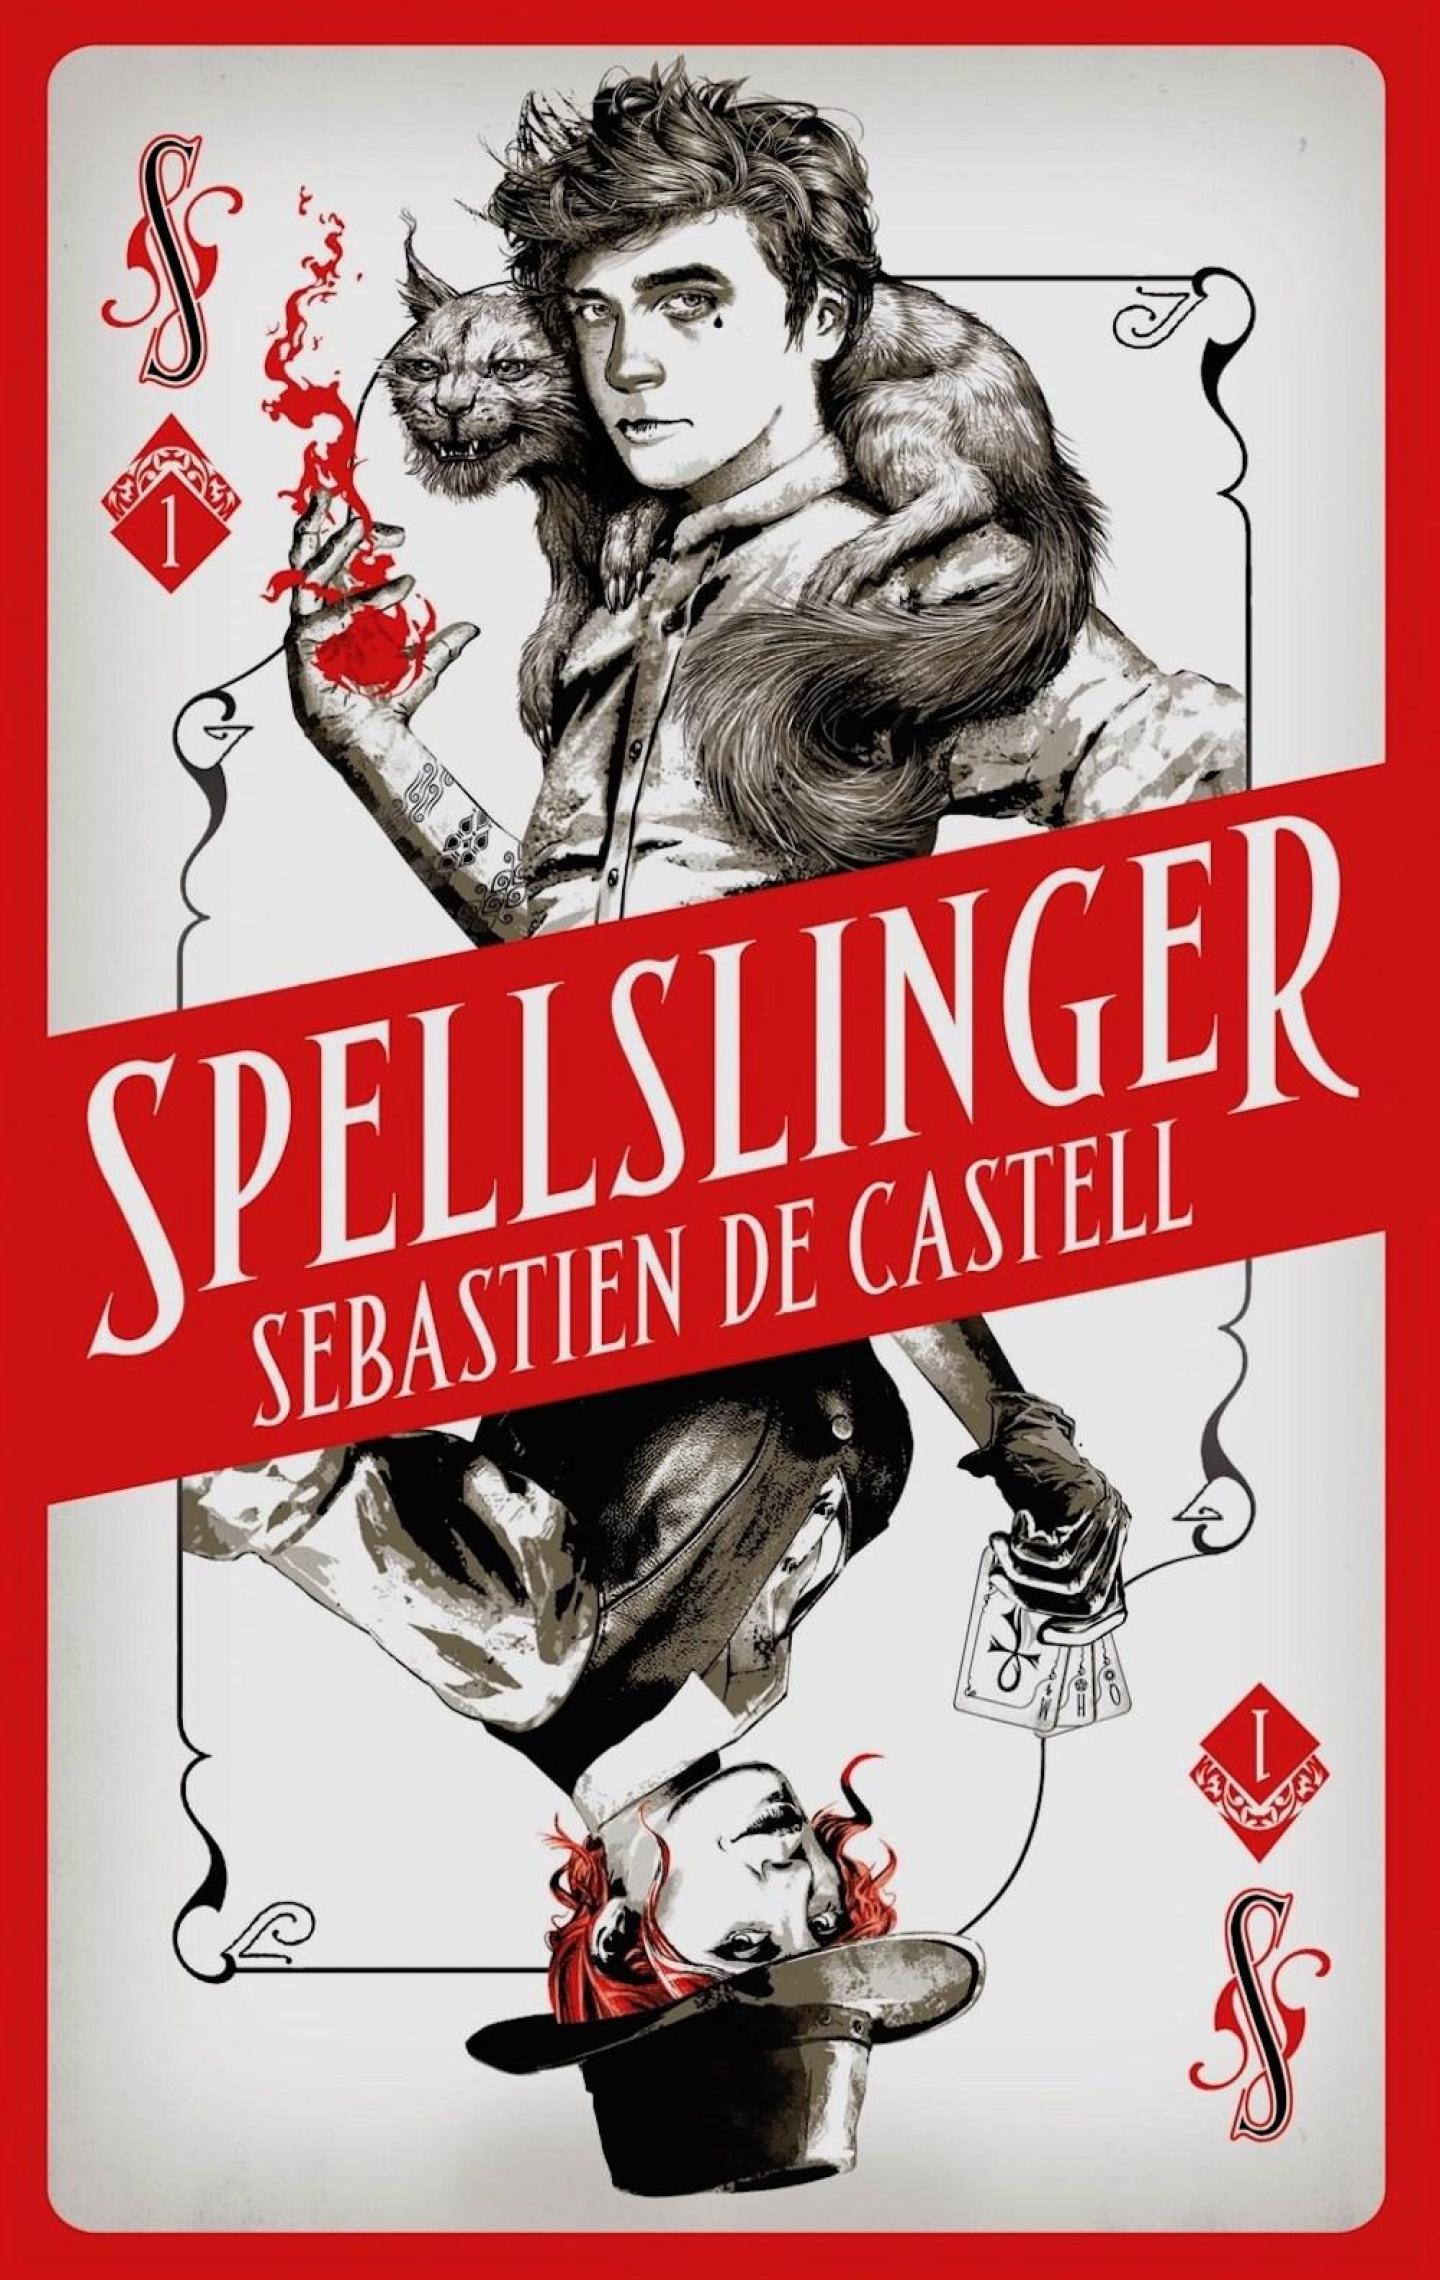 Play Of Shadows  Sebastien de Castell